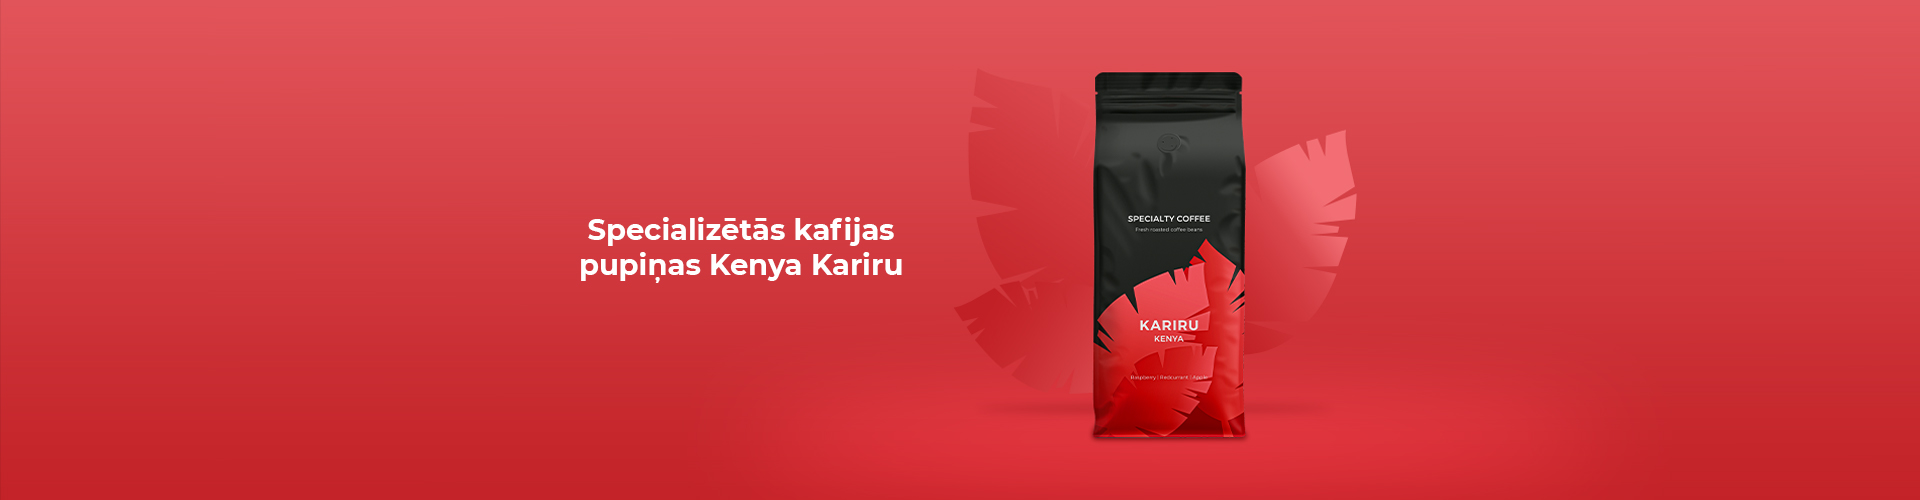 Specializētās kafijas pupiņas Kenya Kariru